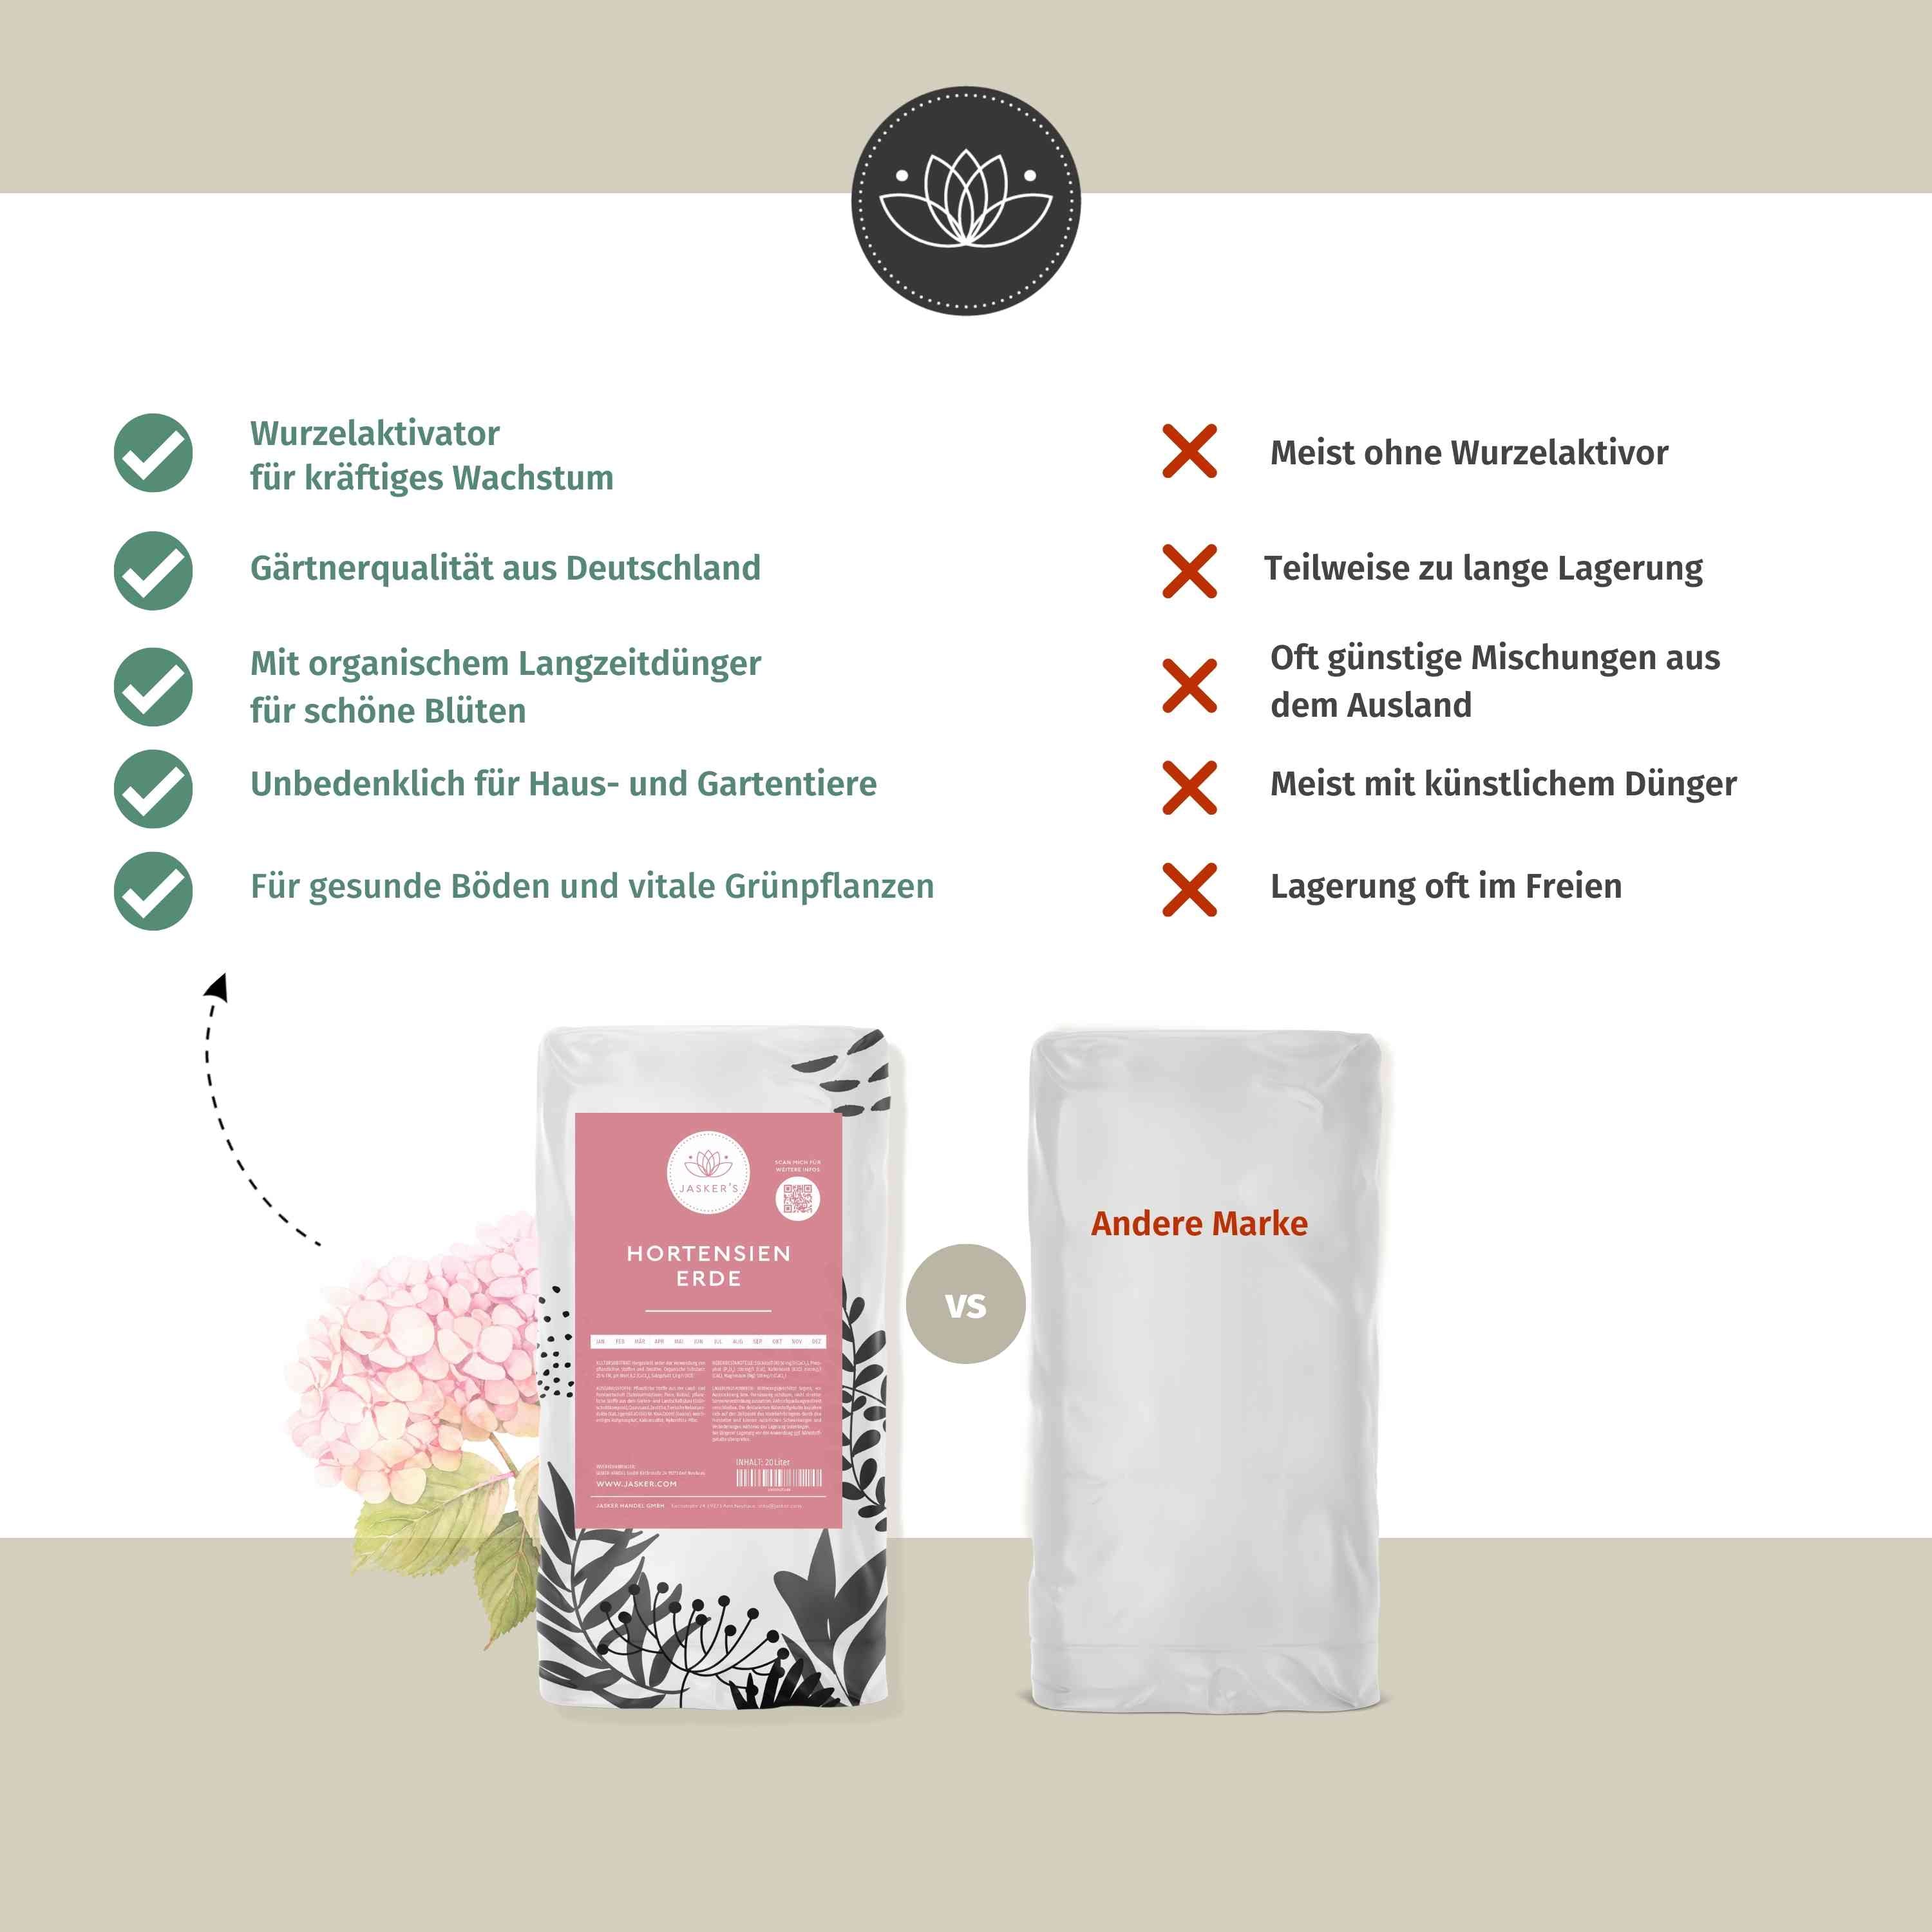 JASKERS® Hortensienerde - Perfekte Blumenerde für weiße und rosafarbene Hortensien